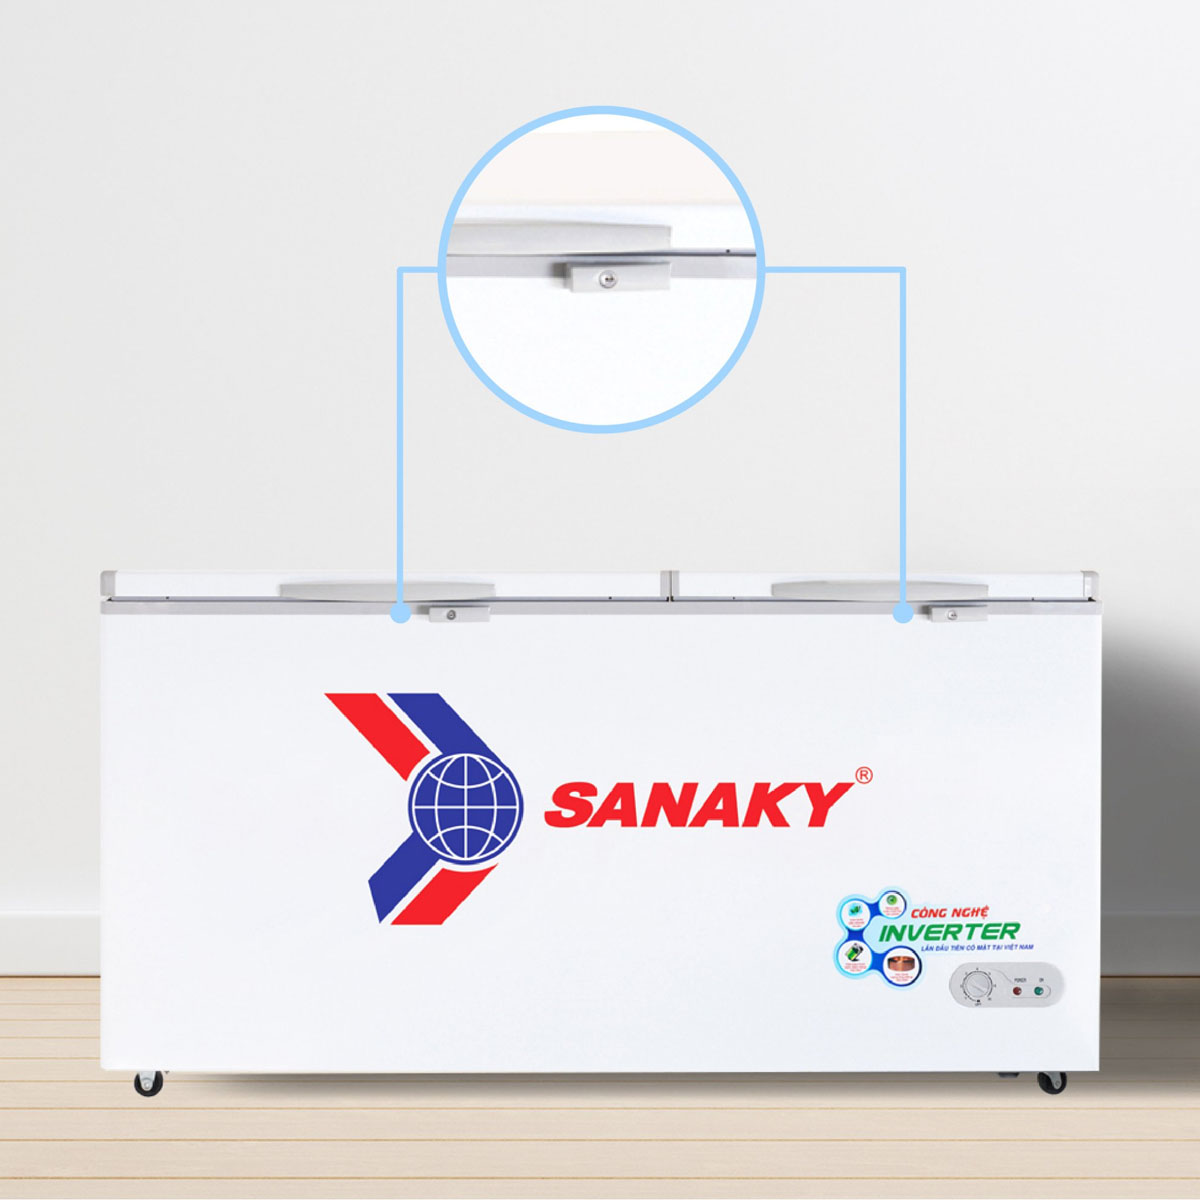 Tủ Đông Sanaky VH 6699HY3 được trang bị khóa an toàn tiện lợi